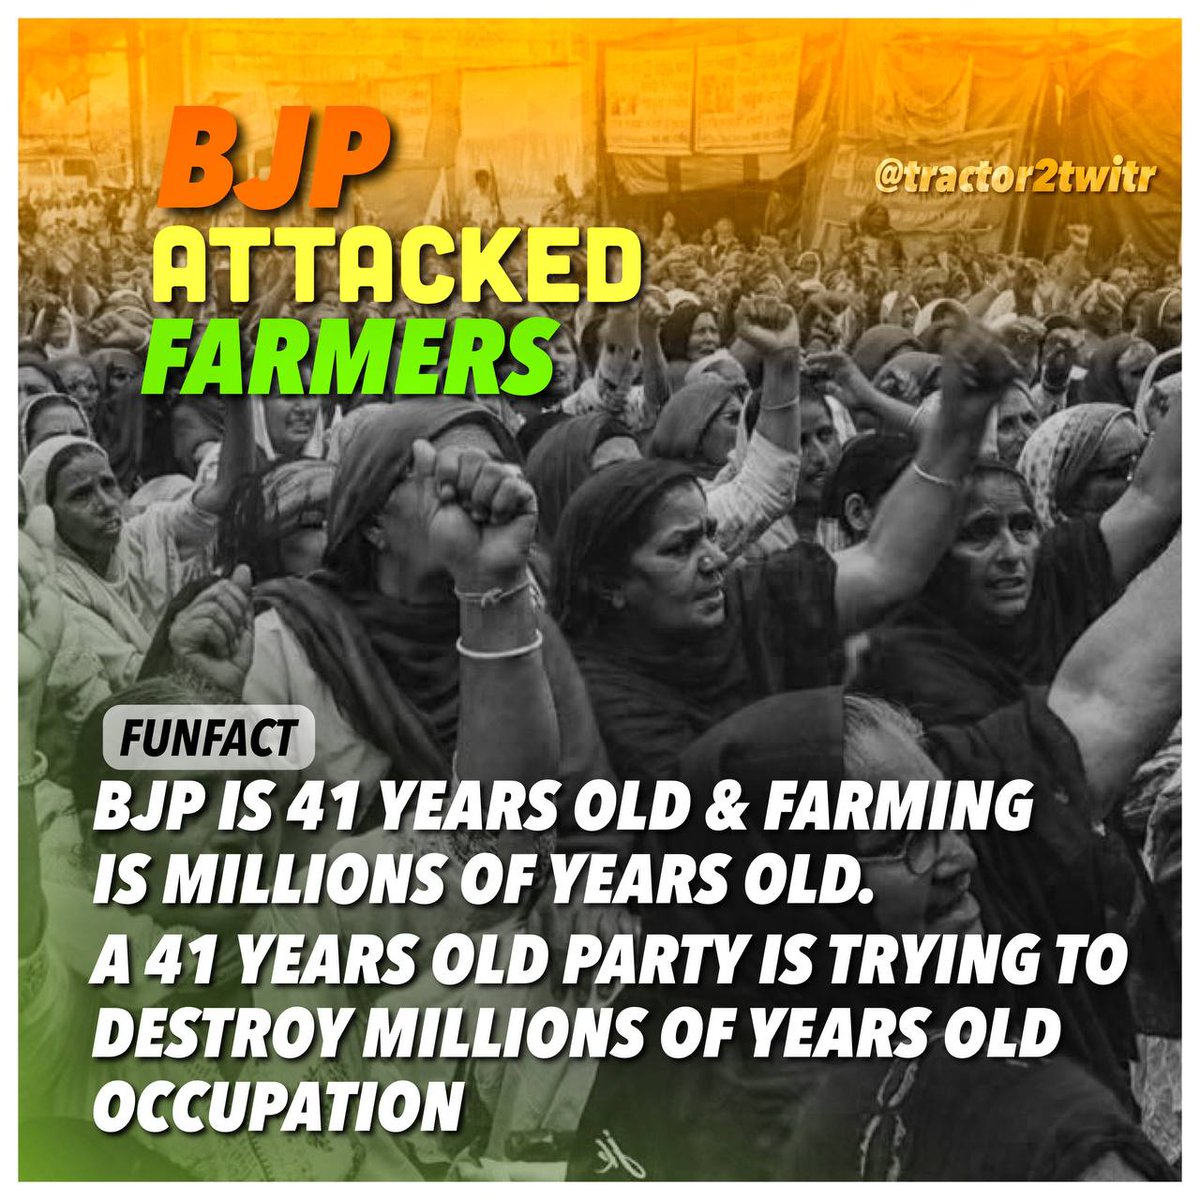 RT @kaurgillv: BJP doesn't stand a chance against our kisaans!

#BJPAttackedFarmers 
#FarmersProtest https://t.co/02TSLK1alK